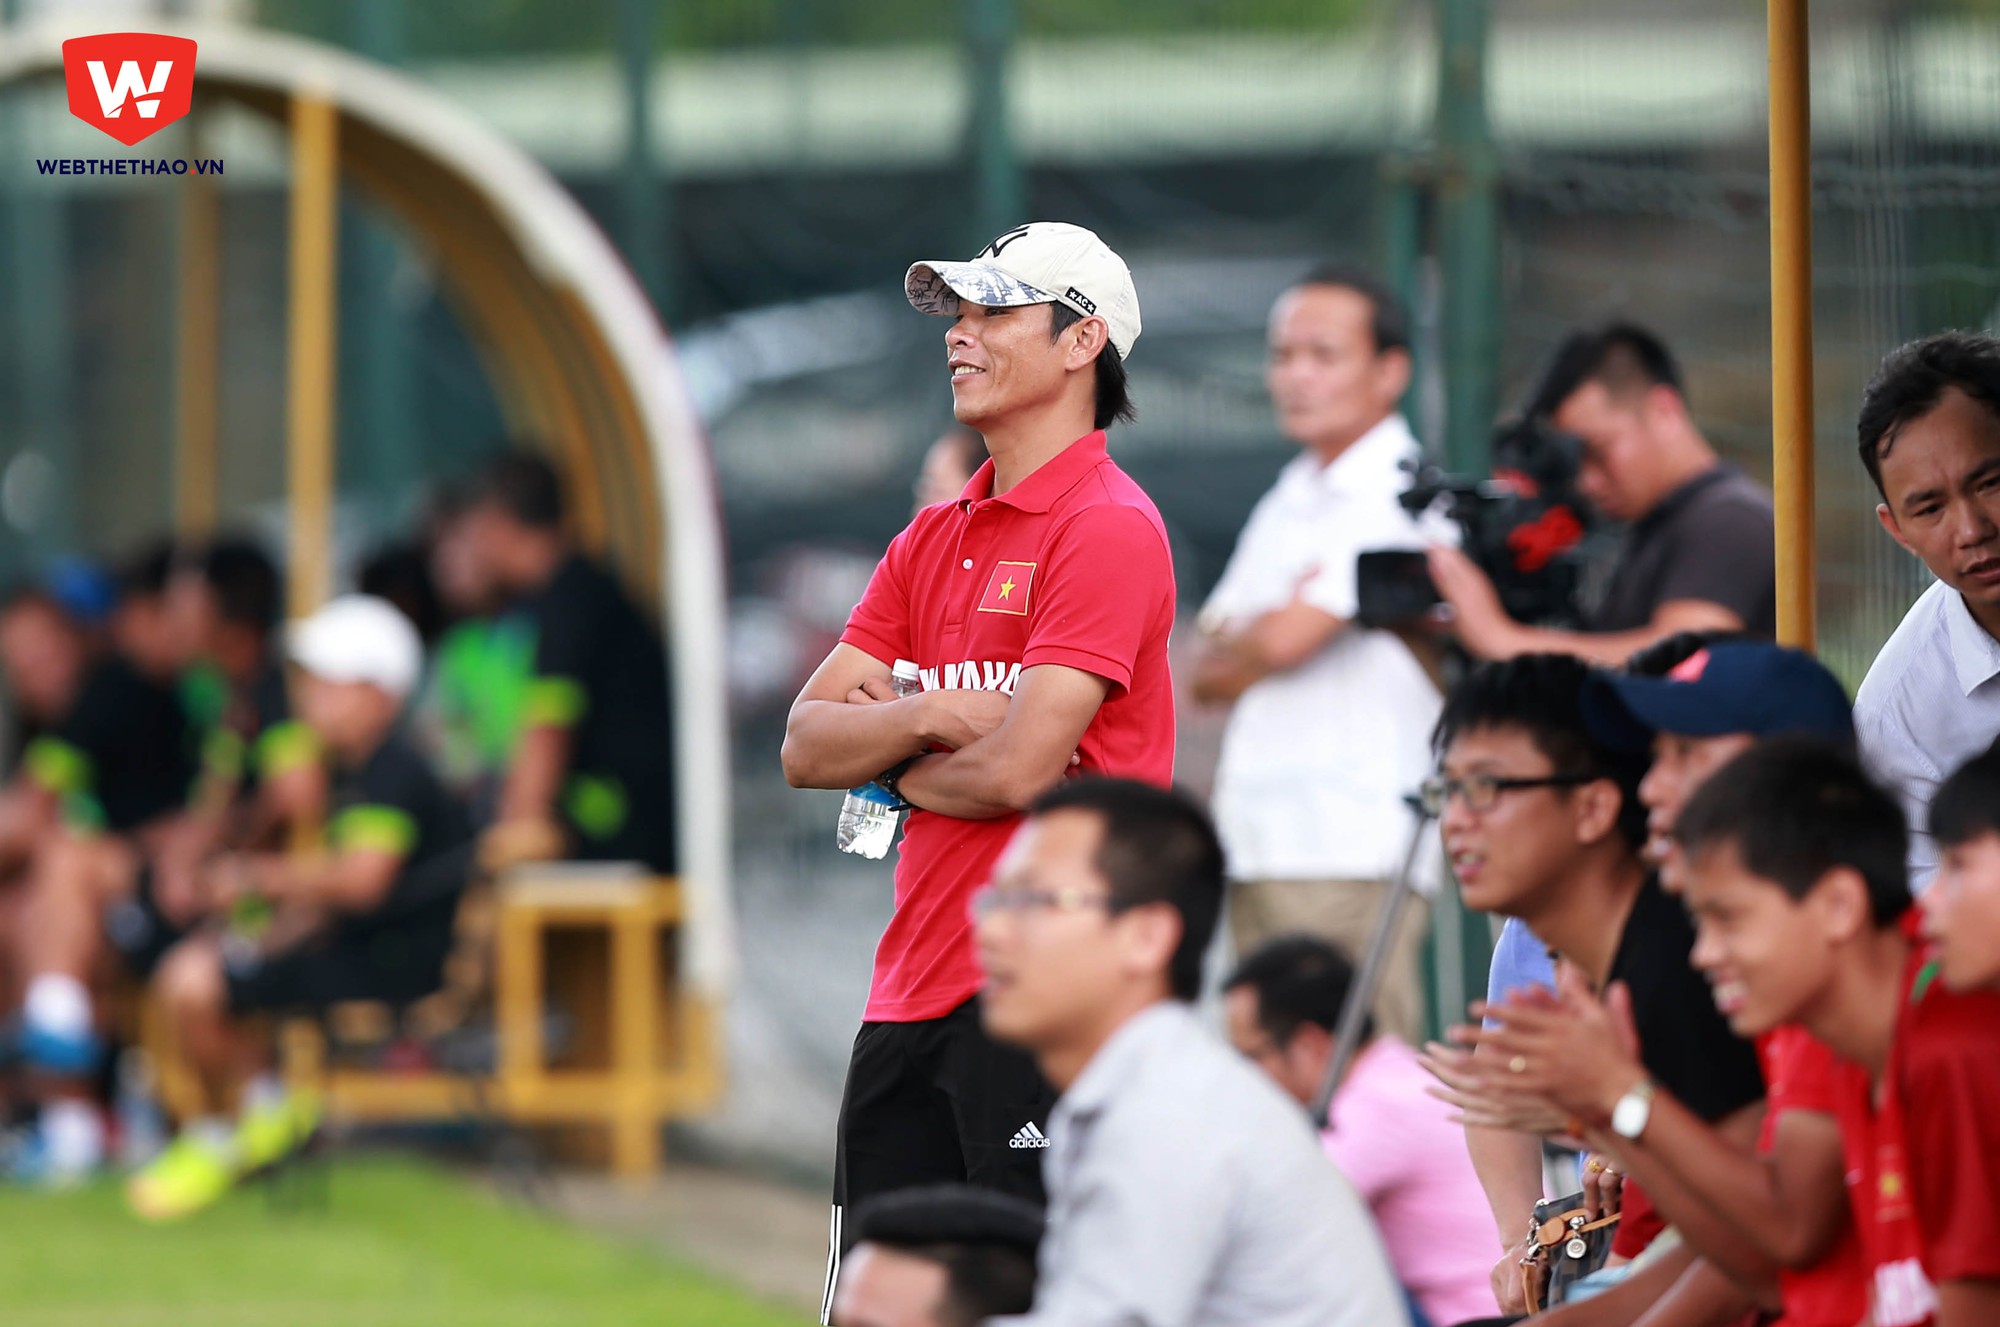 Người đồng nhiệm Nguyễn Huy Hoàng cũng không giấu nụ cười tươi khi chứng kiến những cầu thủ nhí U.13 Bóng đá học đường Yamaha thi đấu.